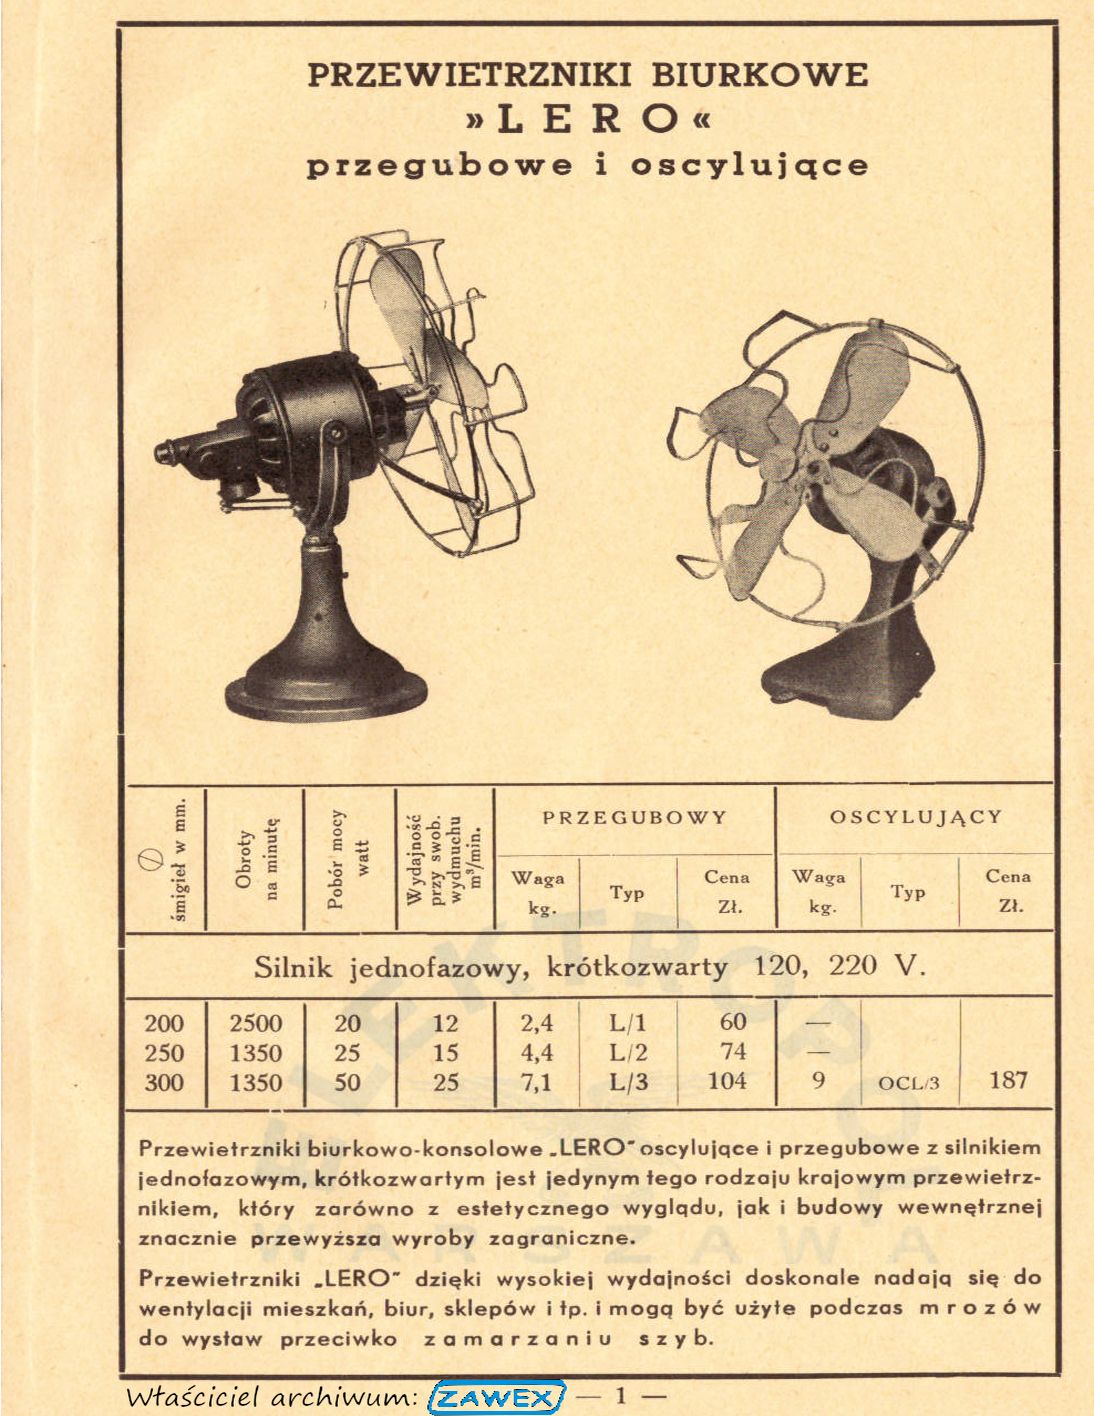 Elektropol katalog wentylatorów lata '30. Model Lero - dawniej wentylatory biurowe